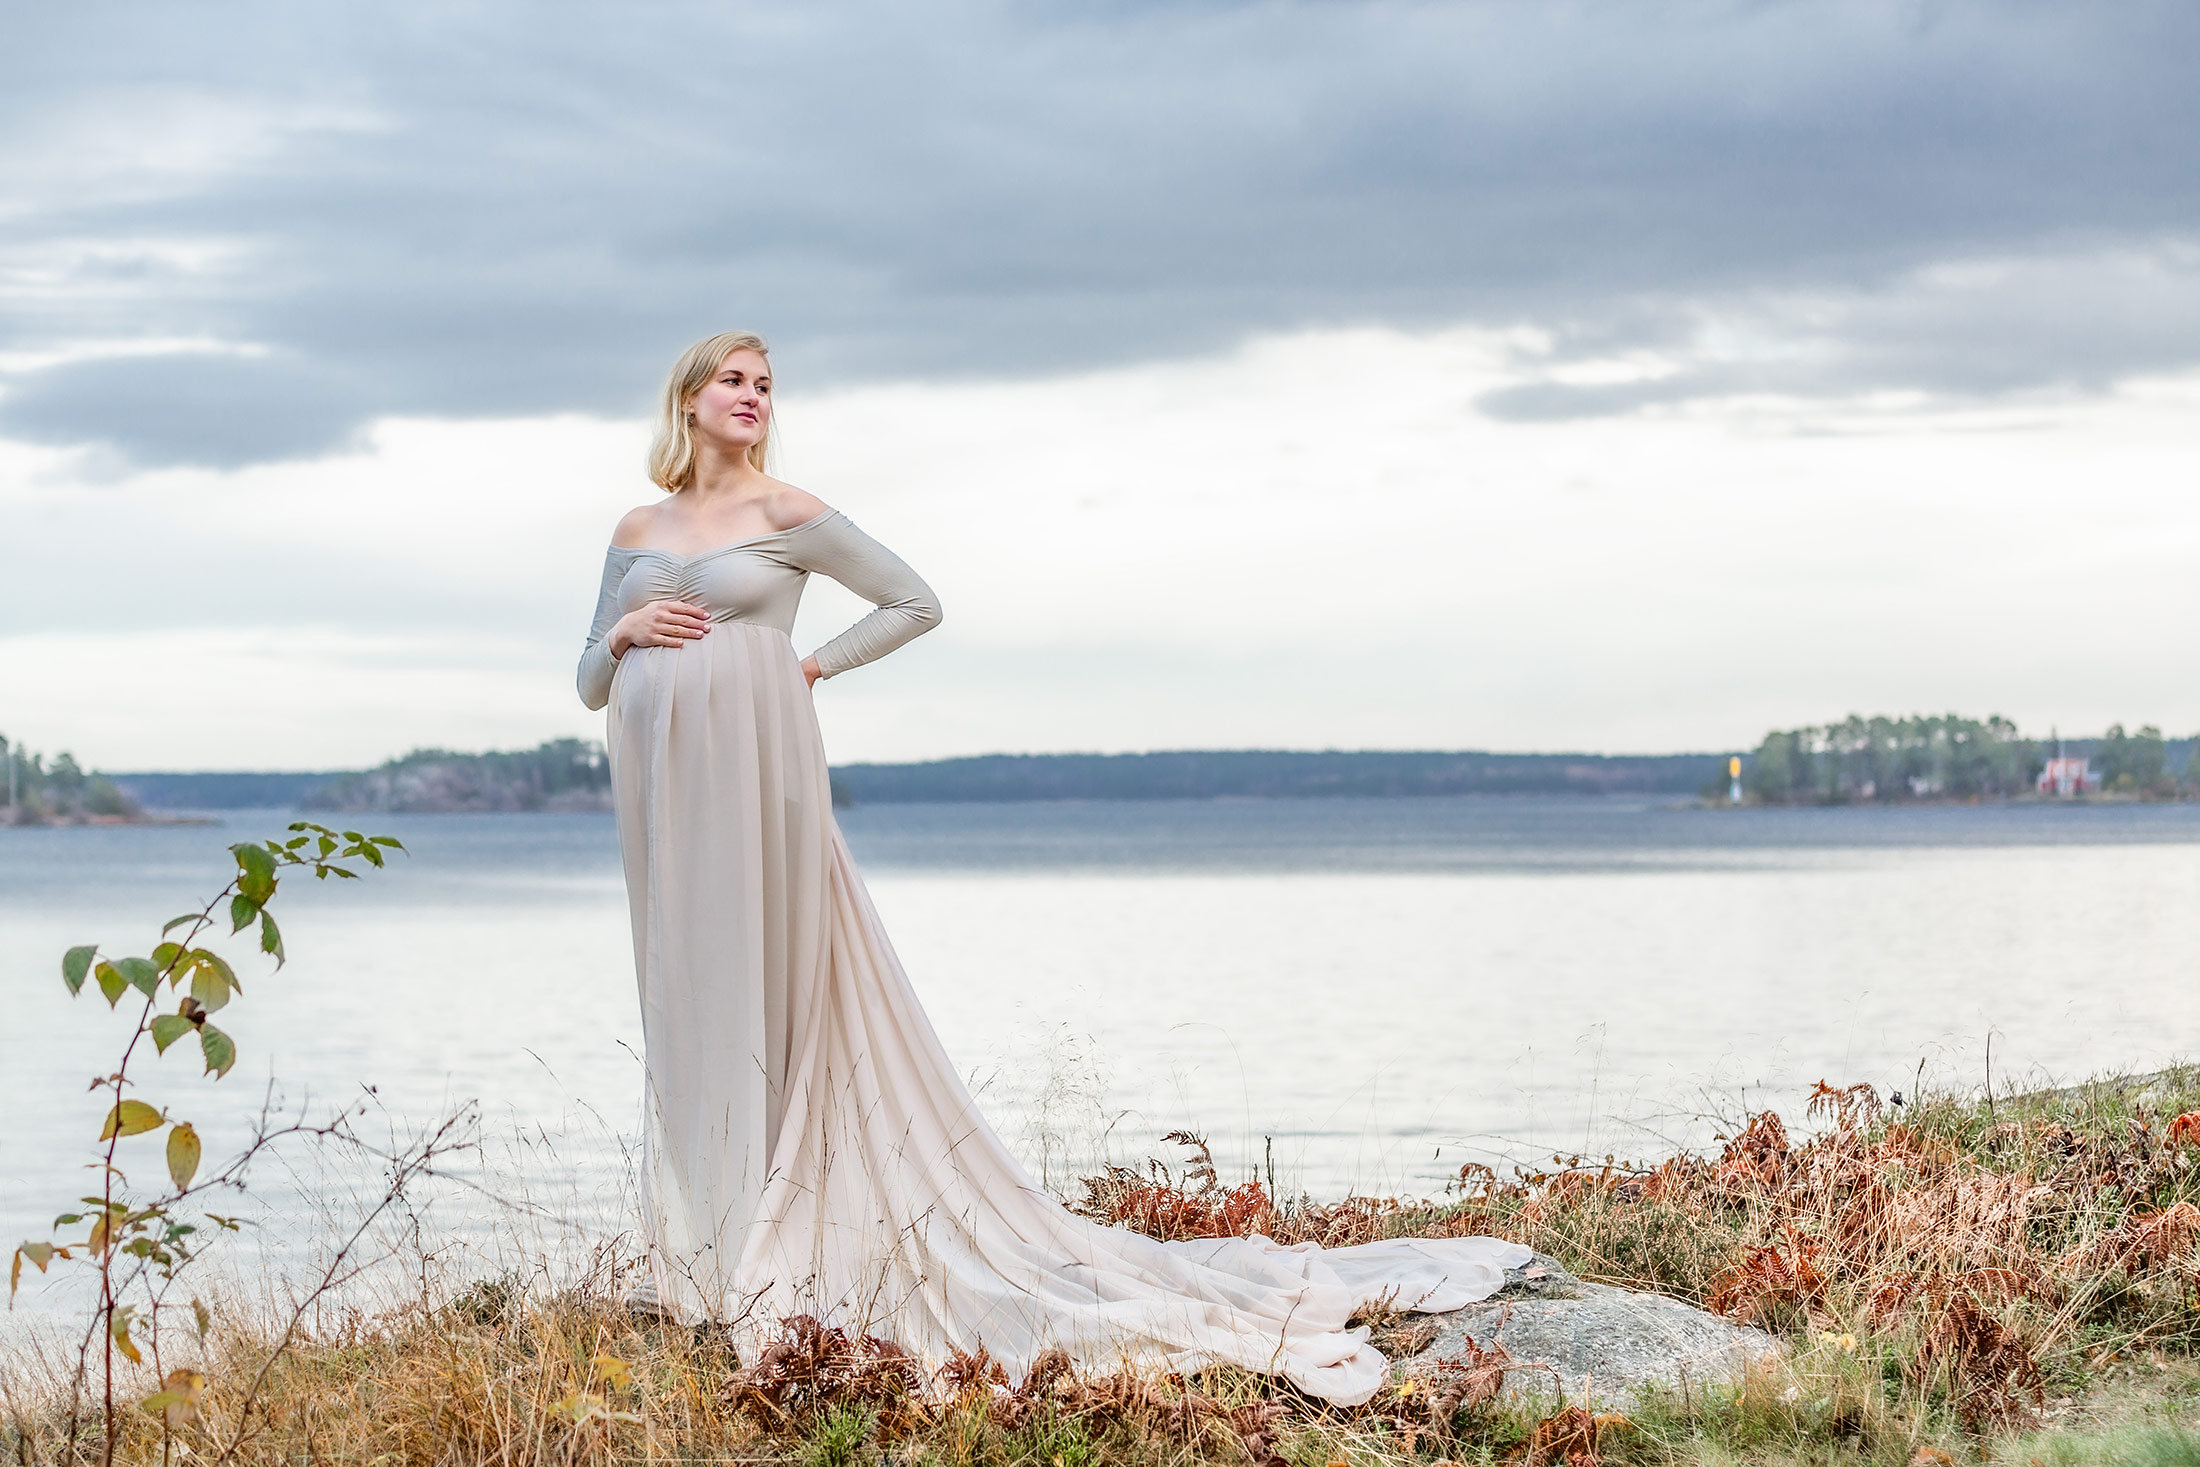 Gravidfotografering i kyla. Det är november och den gravida kvinnan har en beige gravidklänning med långt släp. Hon står på en höjd och i bakgrunden syns havet sträcka ut sig.